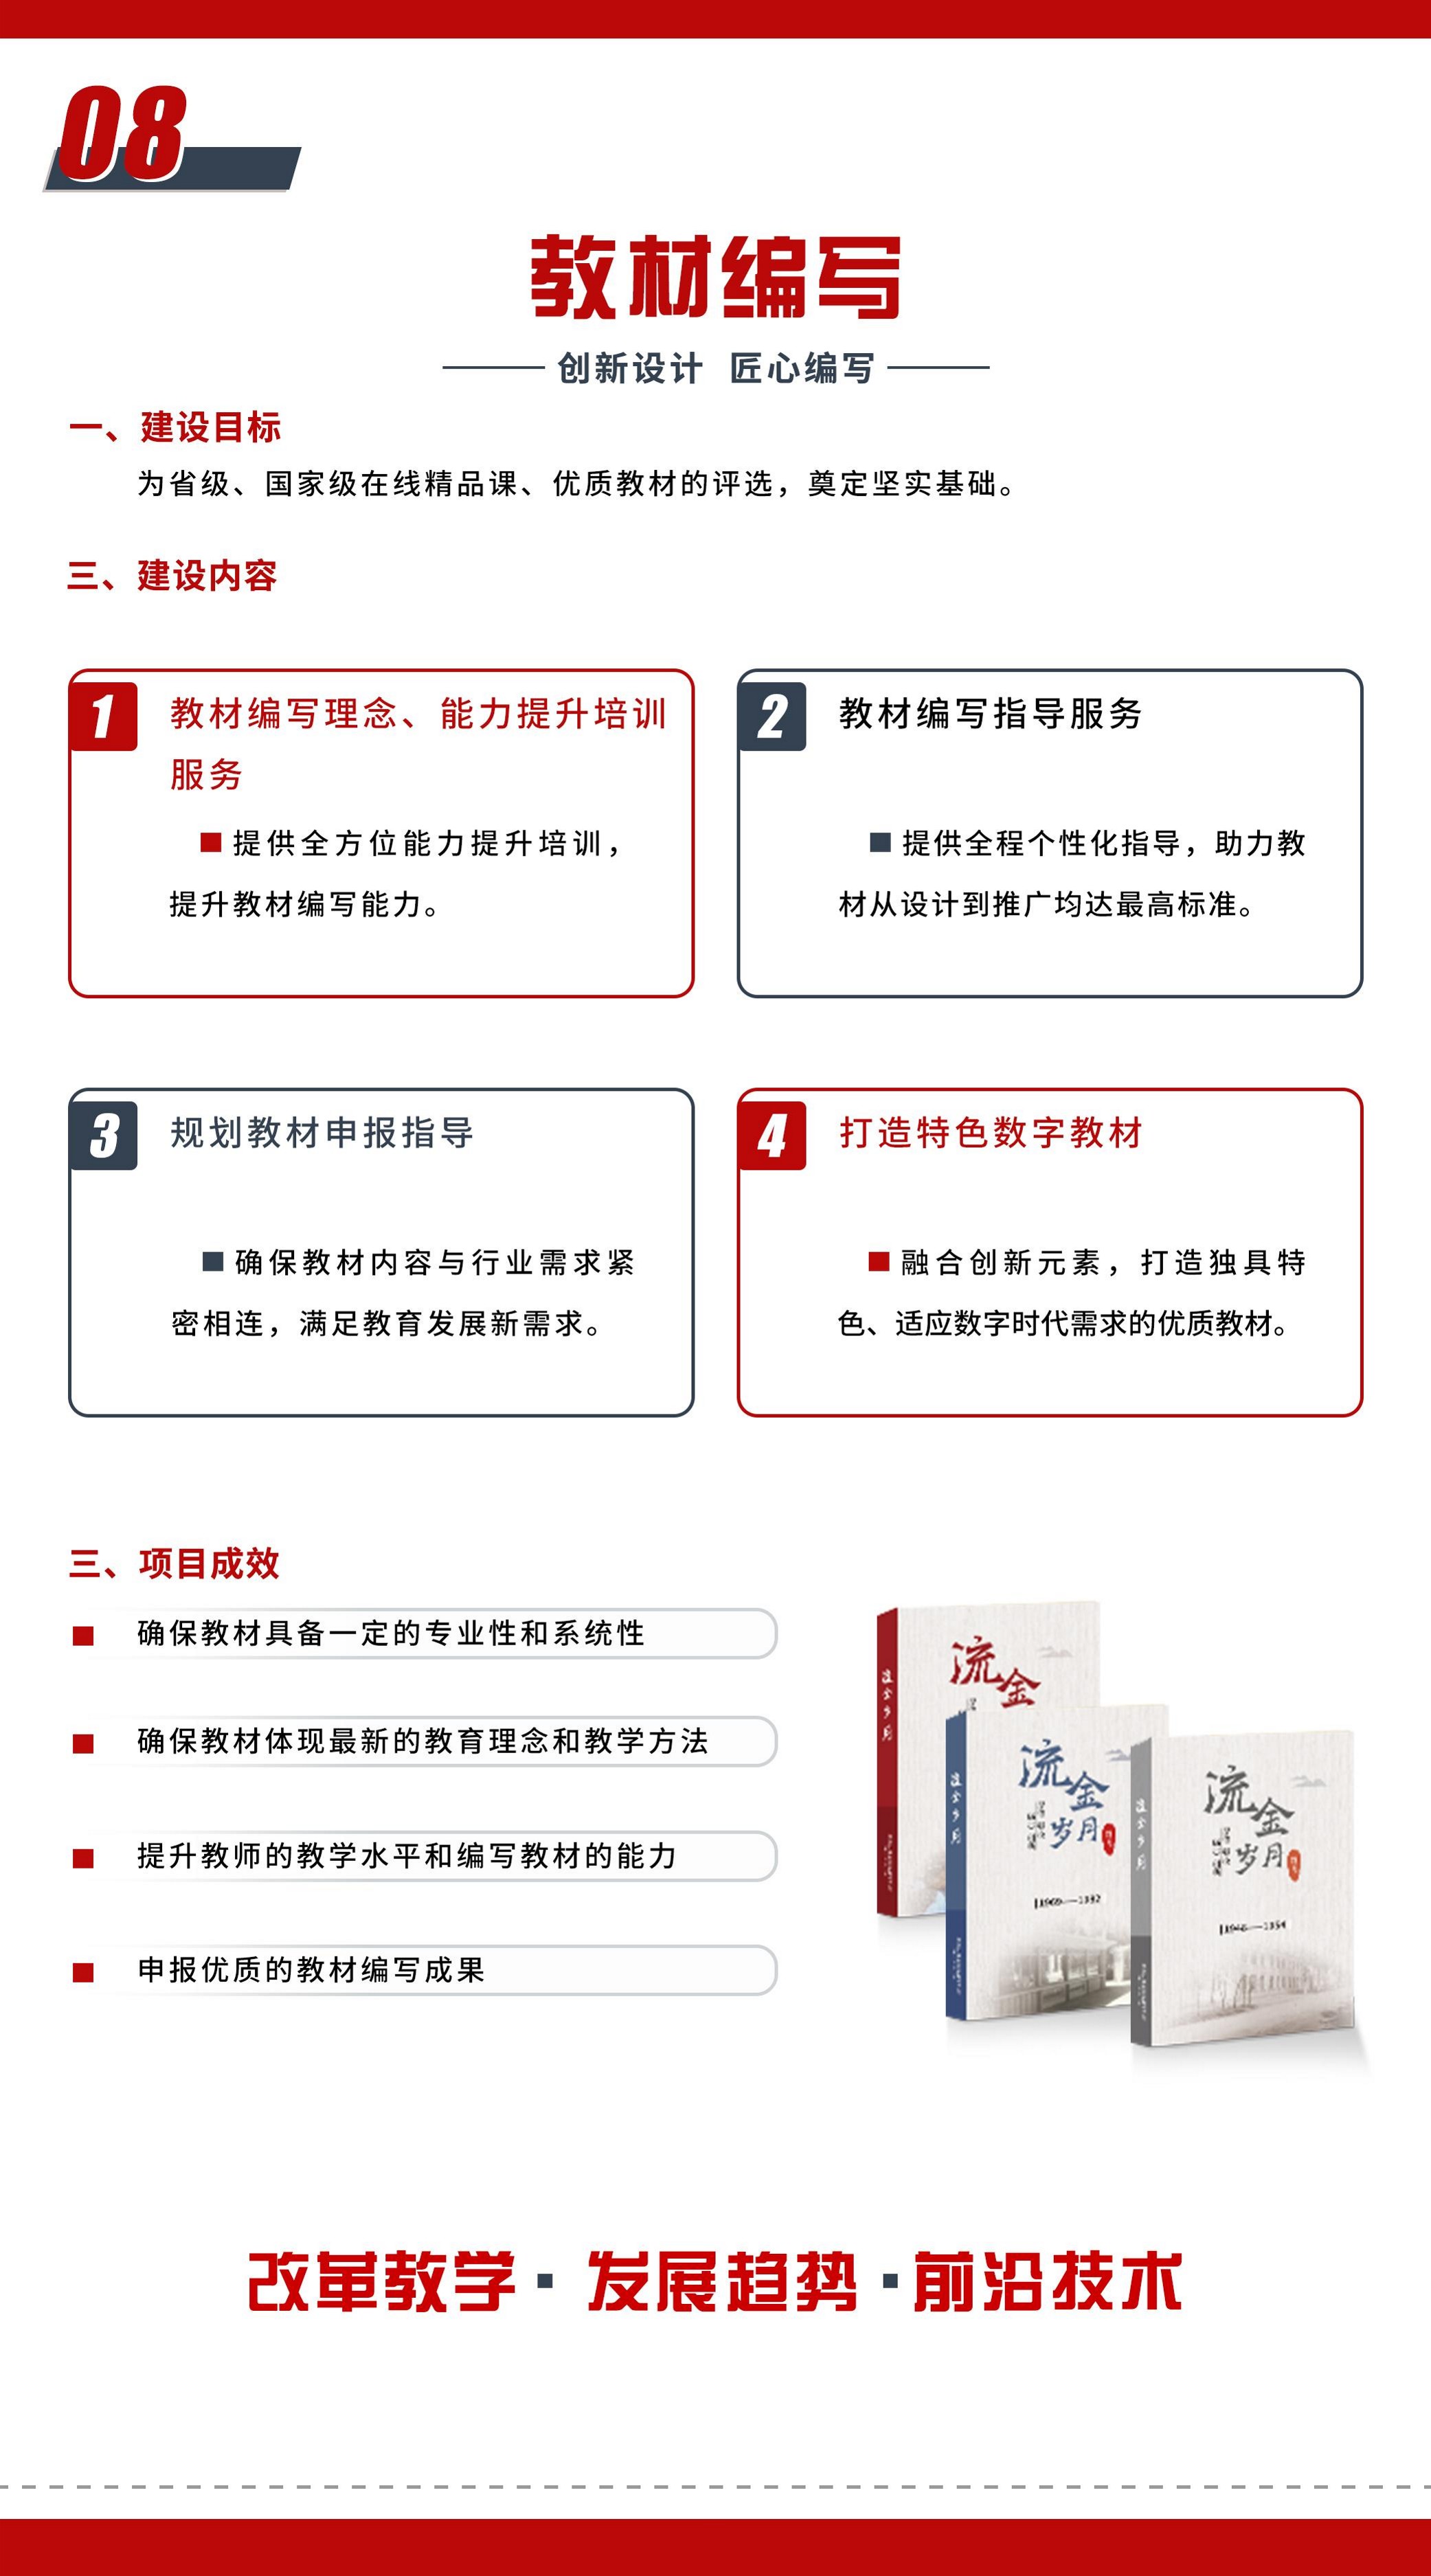 中唐方德-产品手册(2)_13.jpg